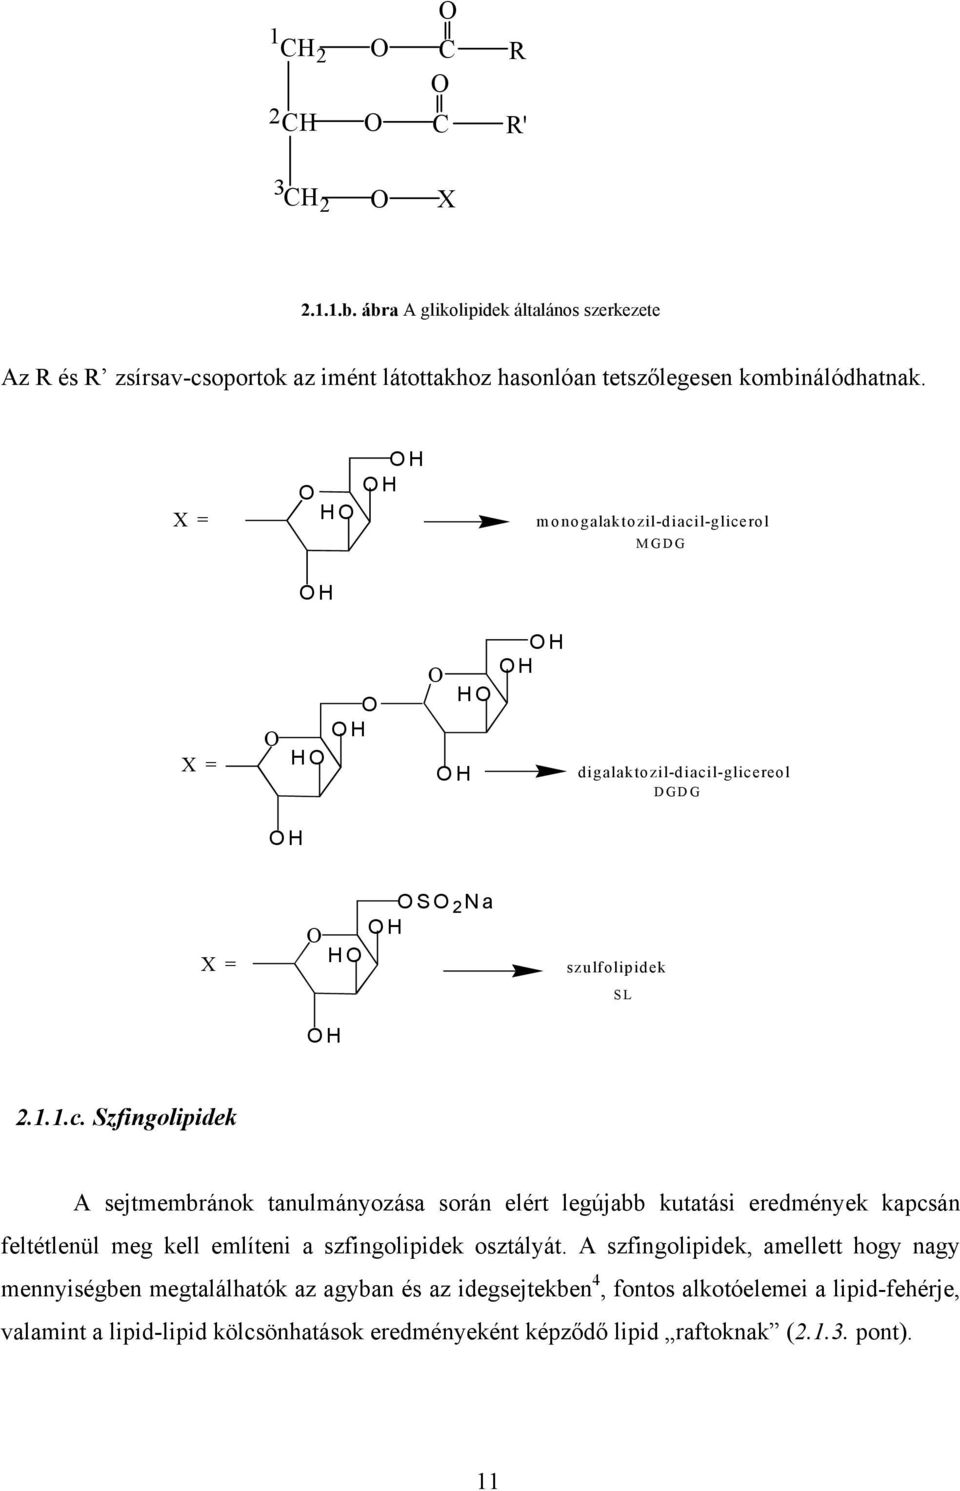 l-glicerol MGDG H X = H H H H H H digalaktozil-diacil-glicereol DGDG H X = S 2 a H H H szulfolipidek SL 2.1.1.c. Szfingolipidek A sejtmembránok tanulmányozása során elért legújabb kutatási eredmények kapcsán feltétlenül meg kell említeni a szfingolipidek osztályát.